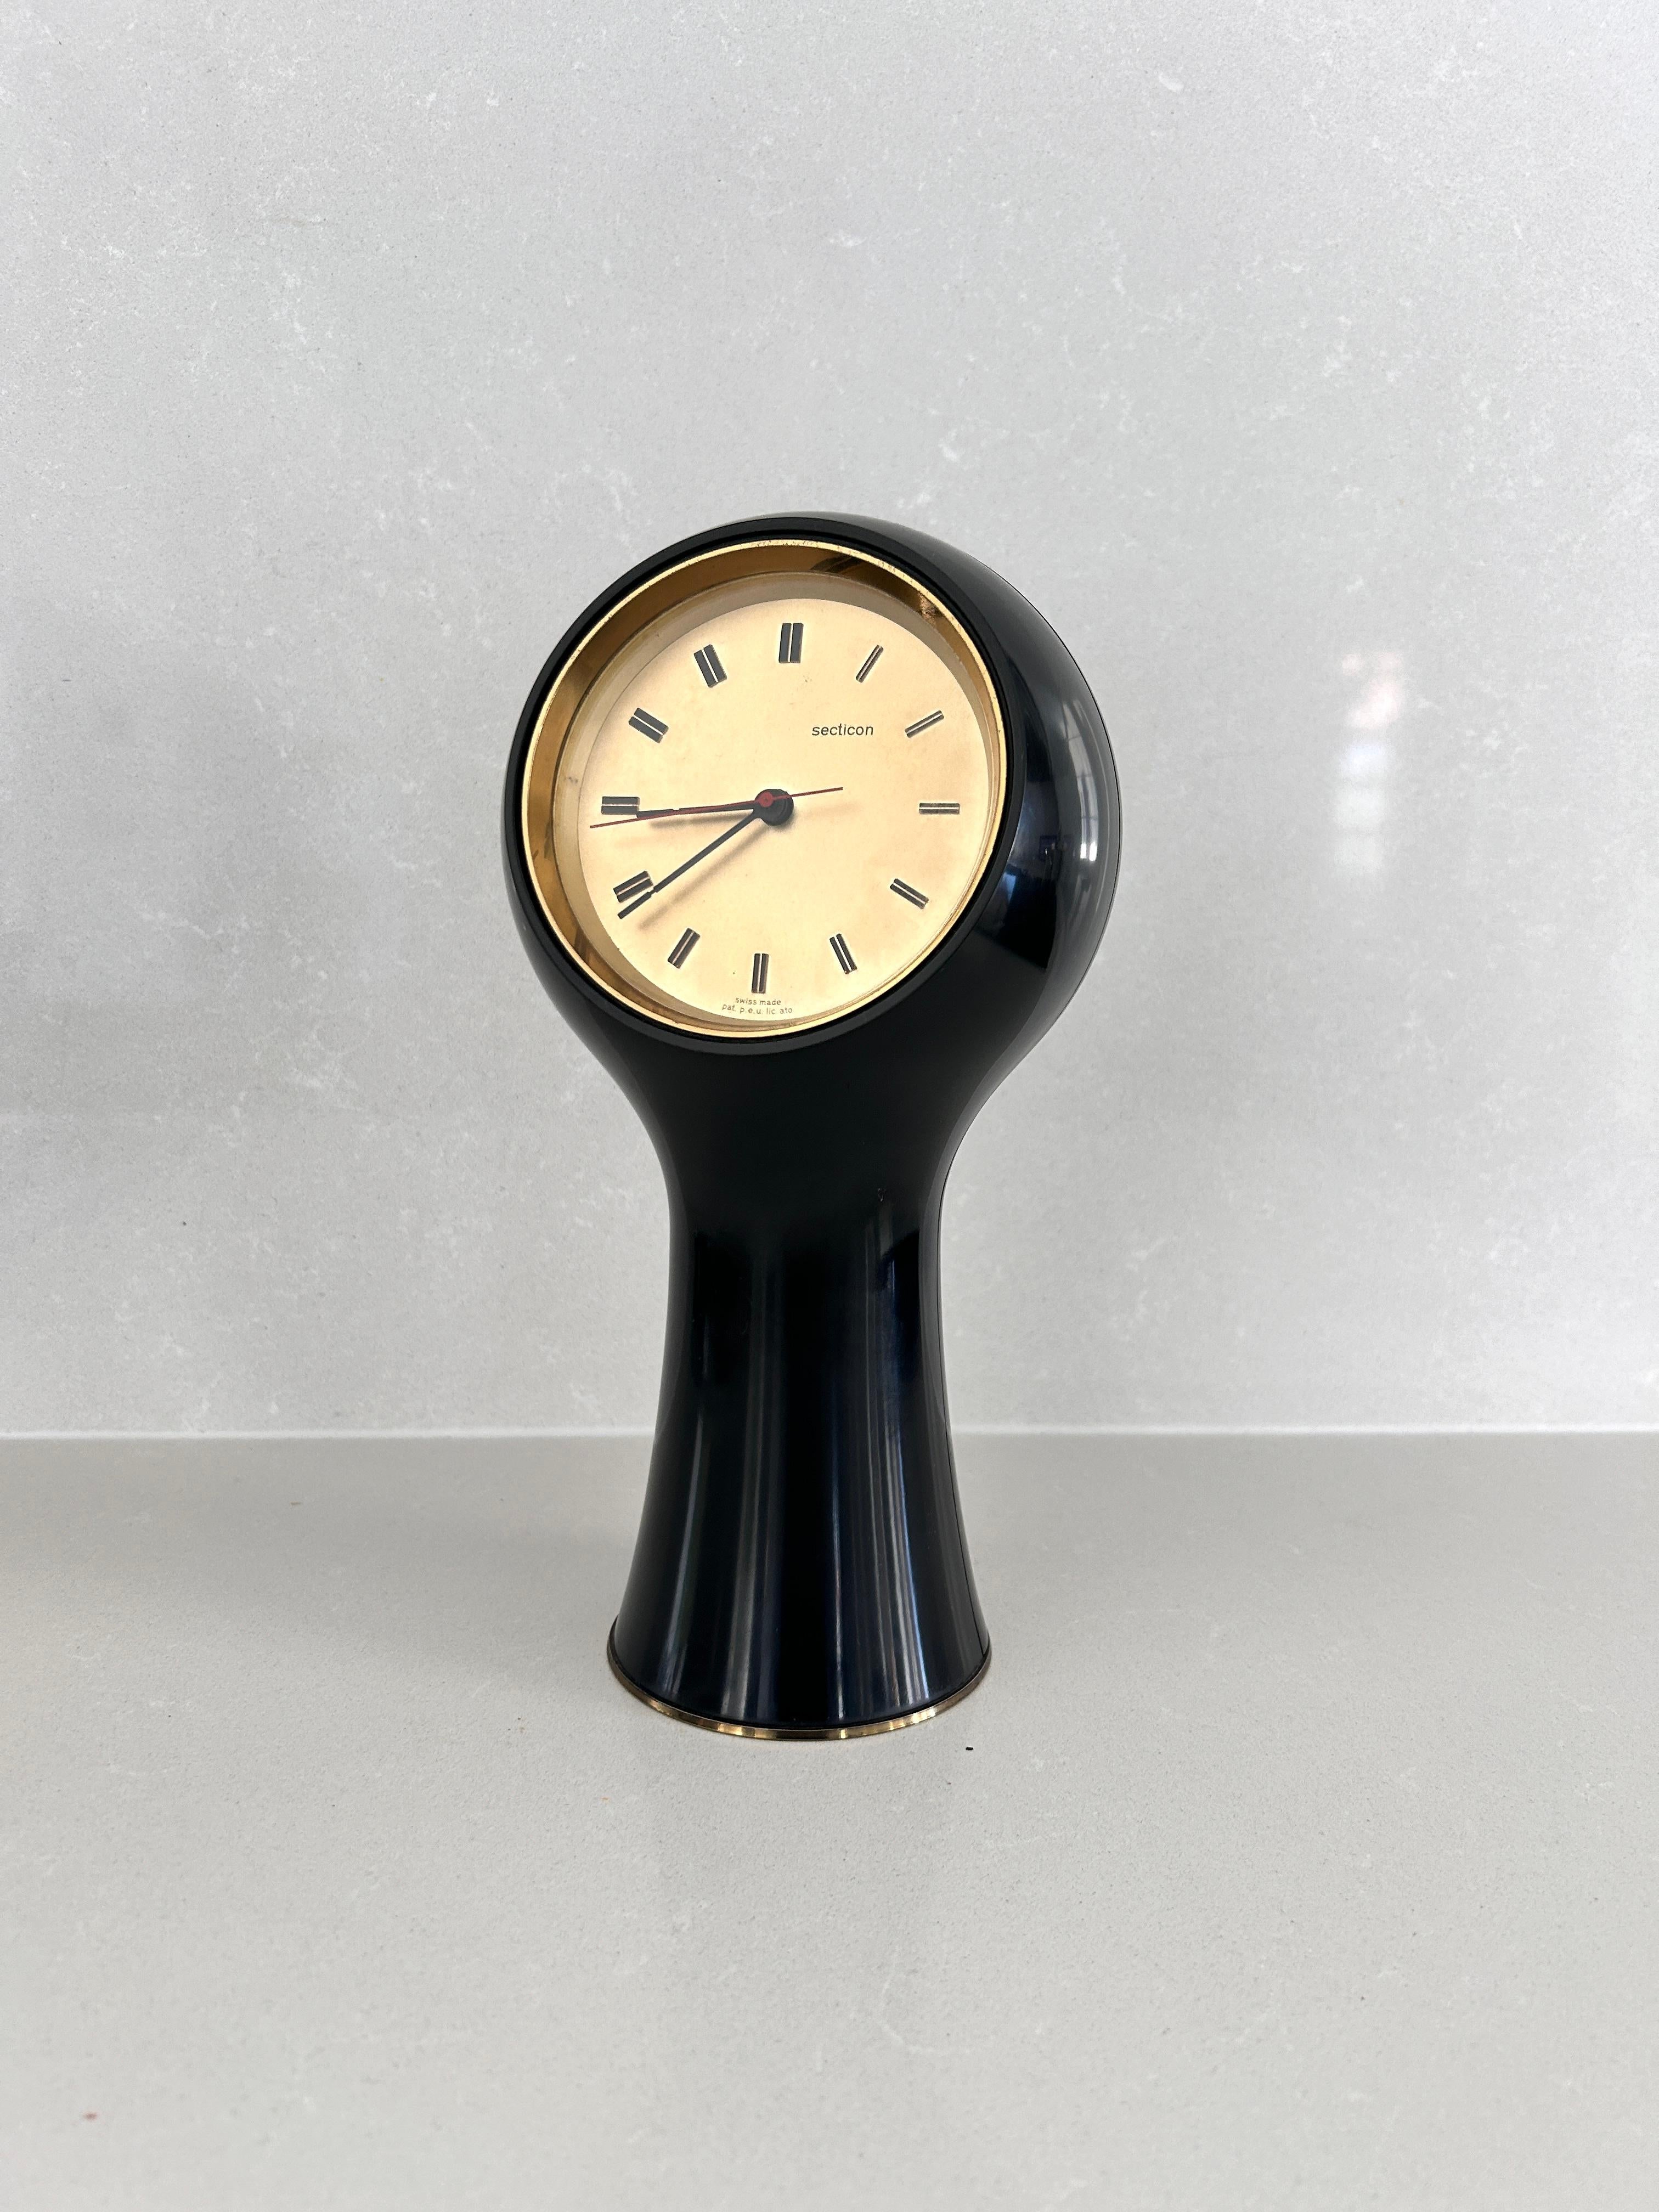 Tischuhr, entworfen von Angelo Mangiarotti und Bruno Morassutti im Jahr 1956 für die Schweizer Firma Le Porte-Echappement Universel.  

Schwarzer Kunststoffrahmen, batteriebetriebenes Uhrwerk.